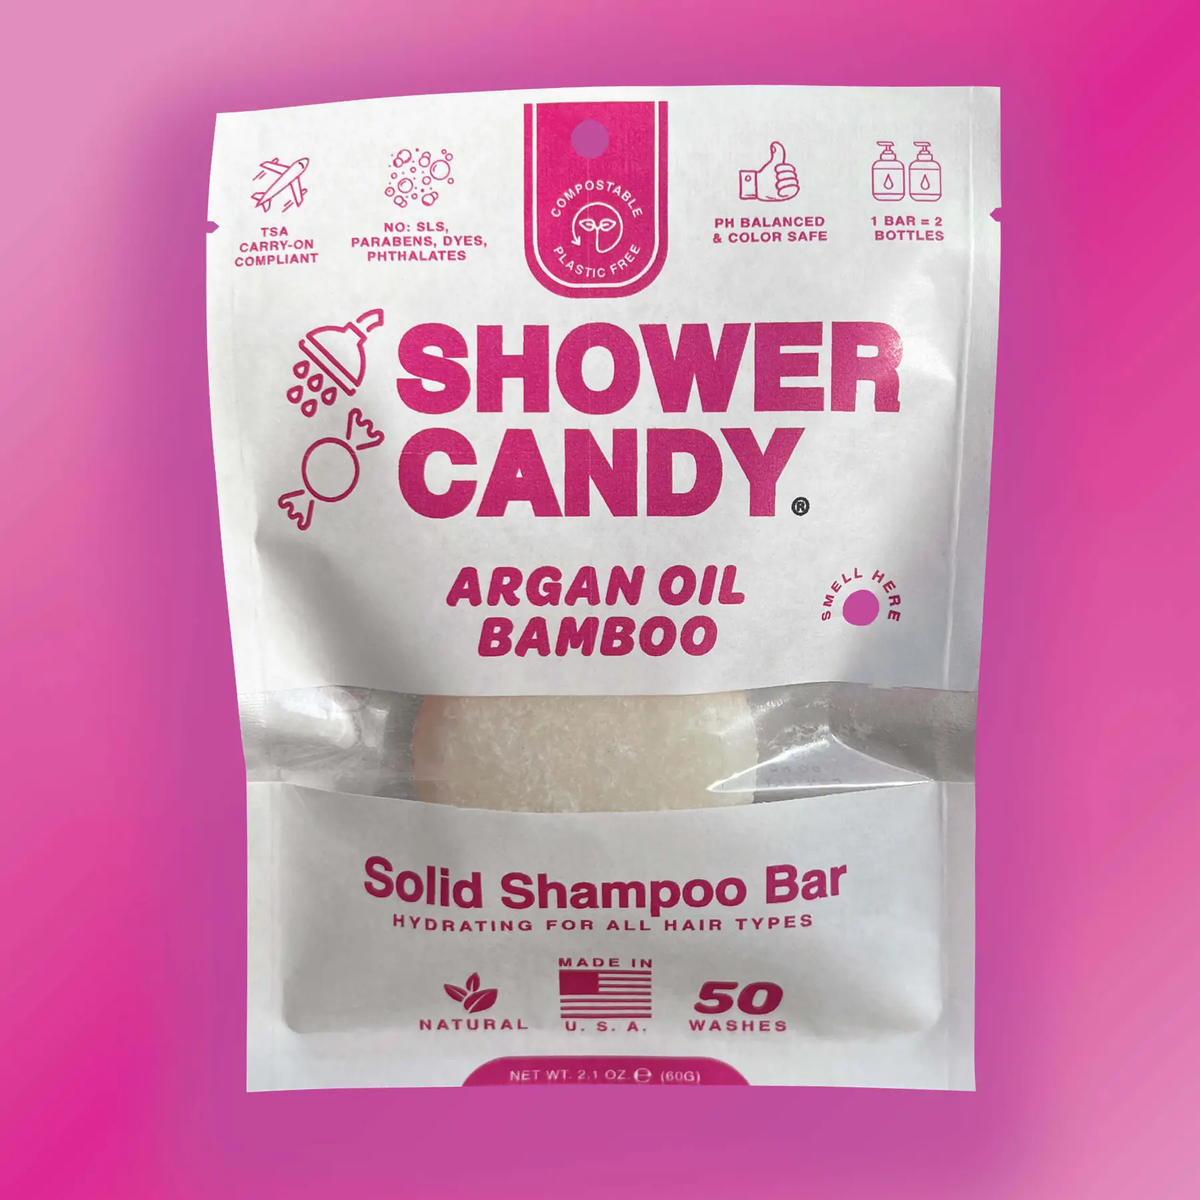 Shower Candy - Argan Oil Bamboo Solid Shampoo Bar